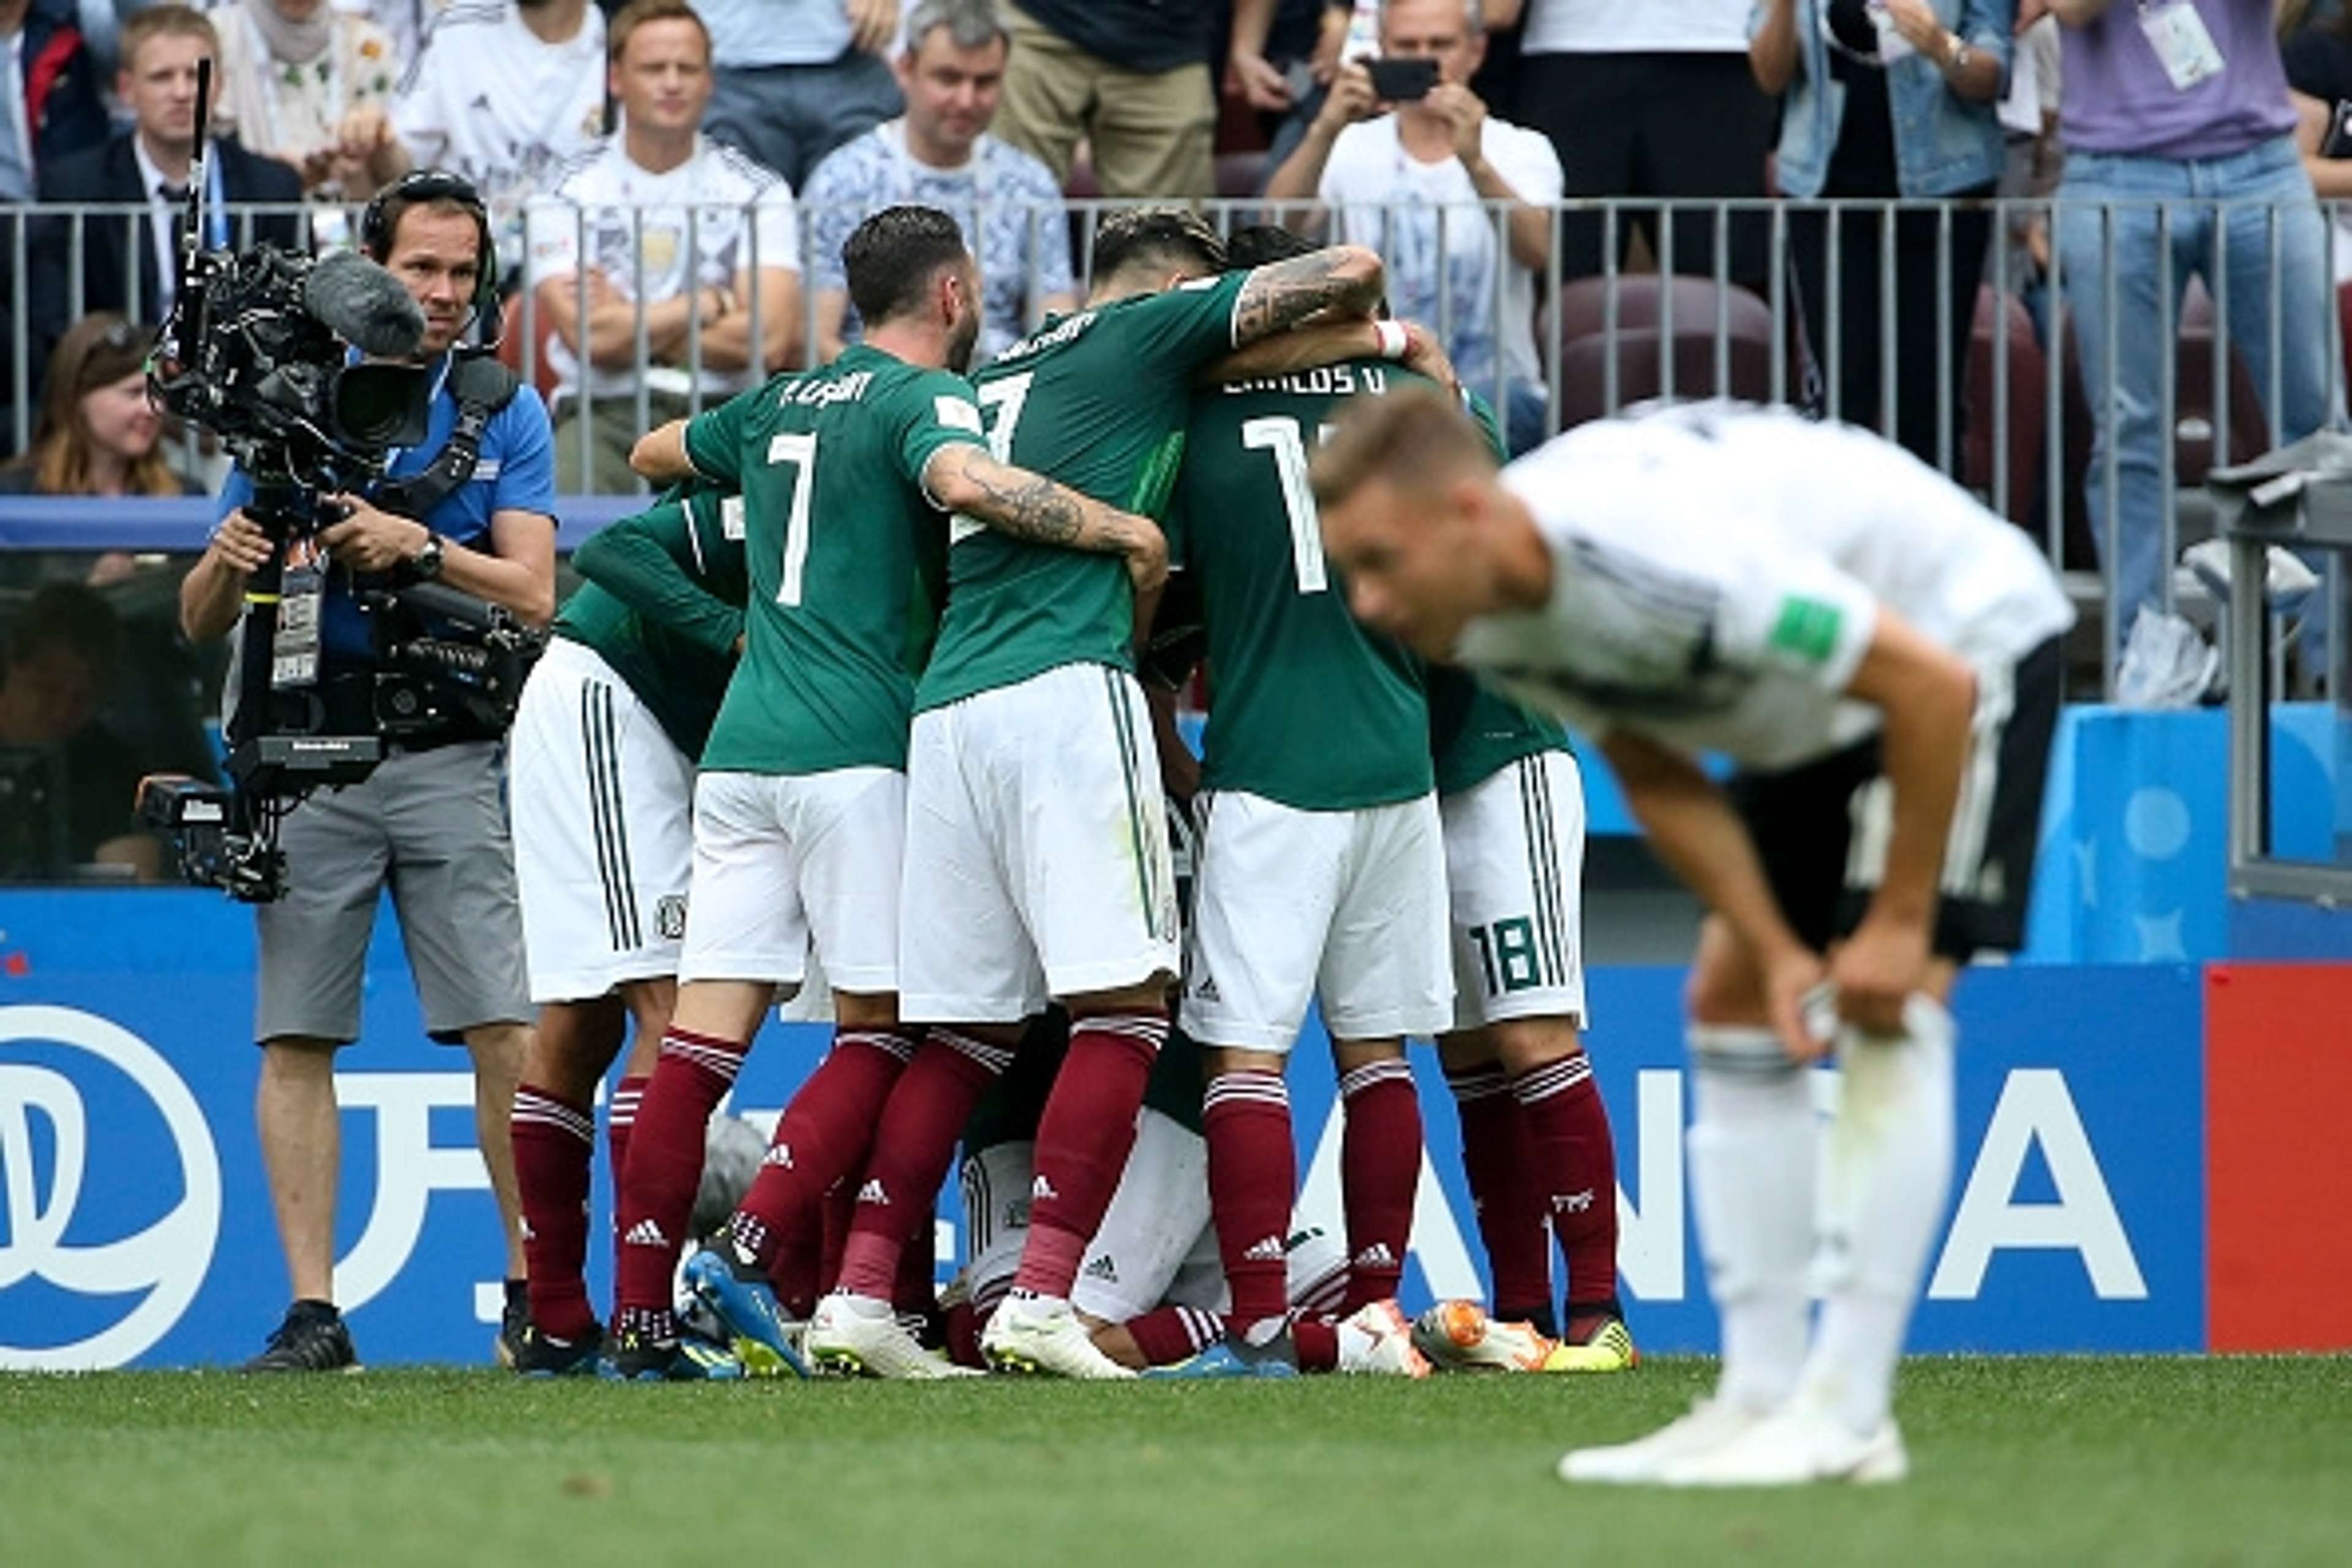 Mexico vs Germany